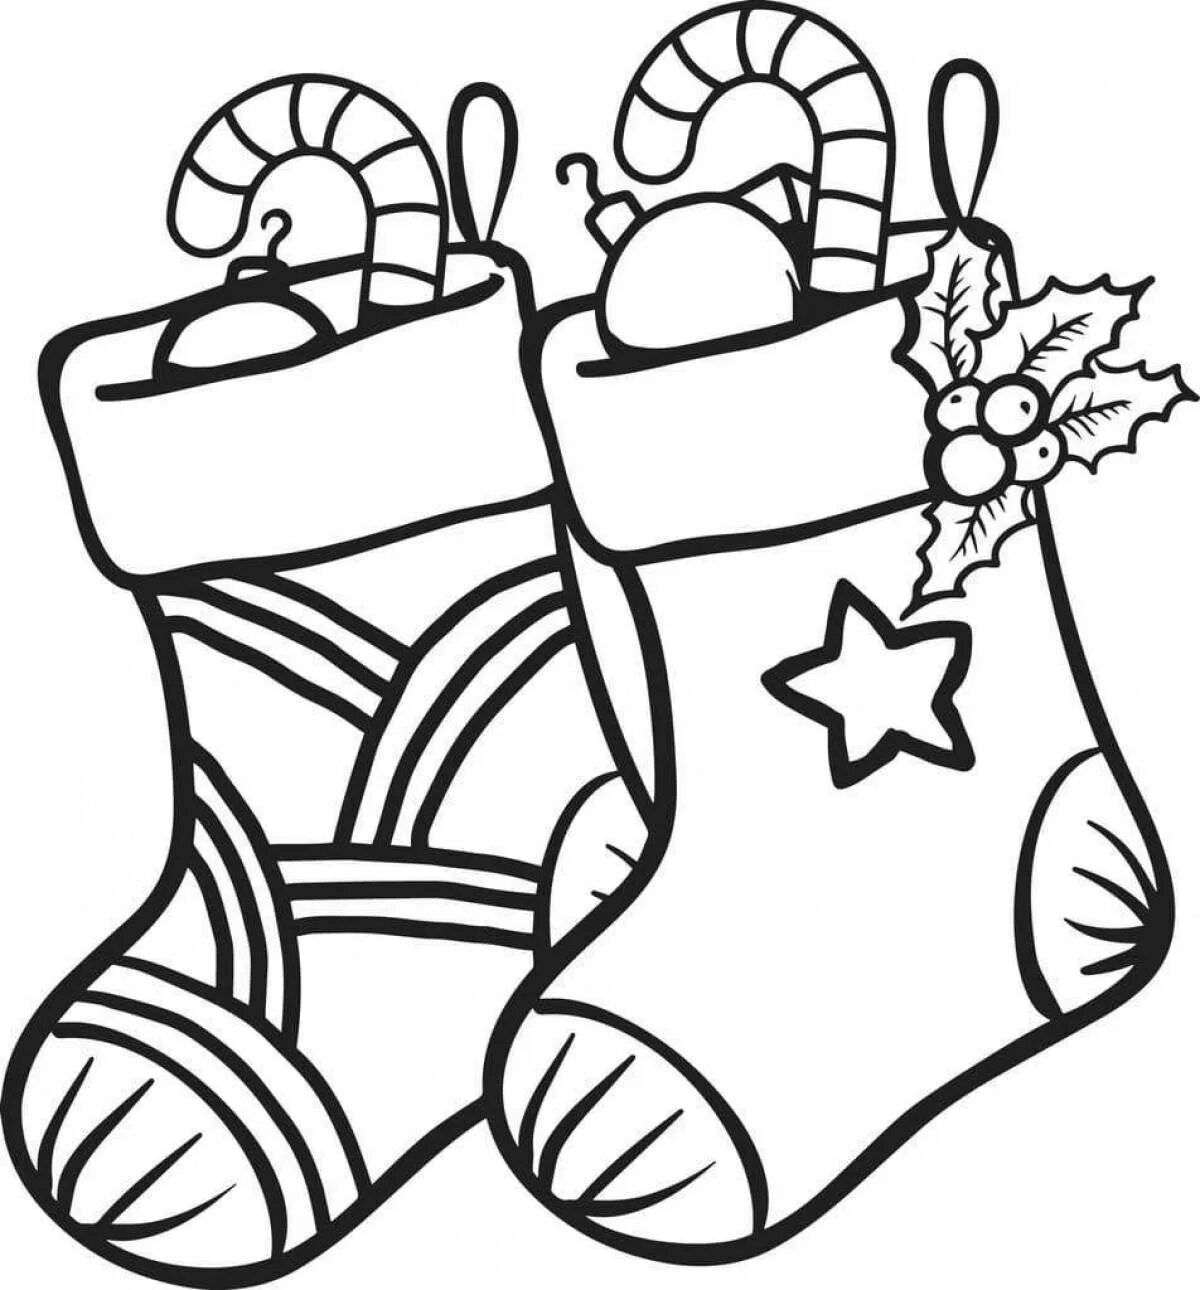 Новый год распечатанная. Новогодний сапожок раскраска. Рождественский носок раскраска. Раскраска Новогодняя для детей. Новогодние рисунки.